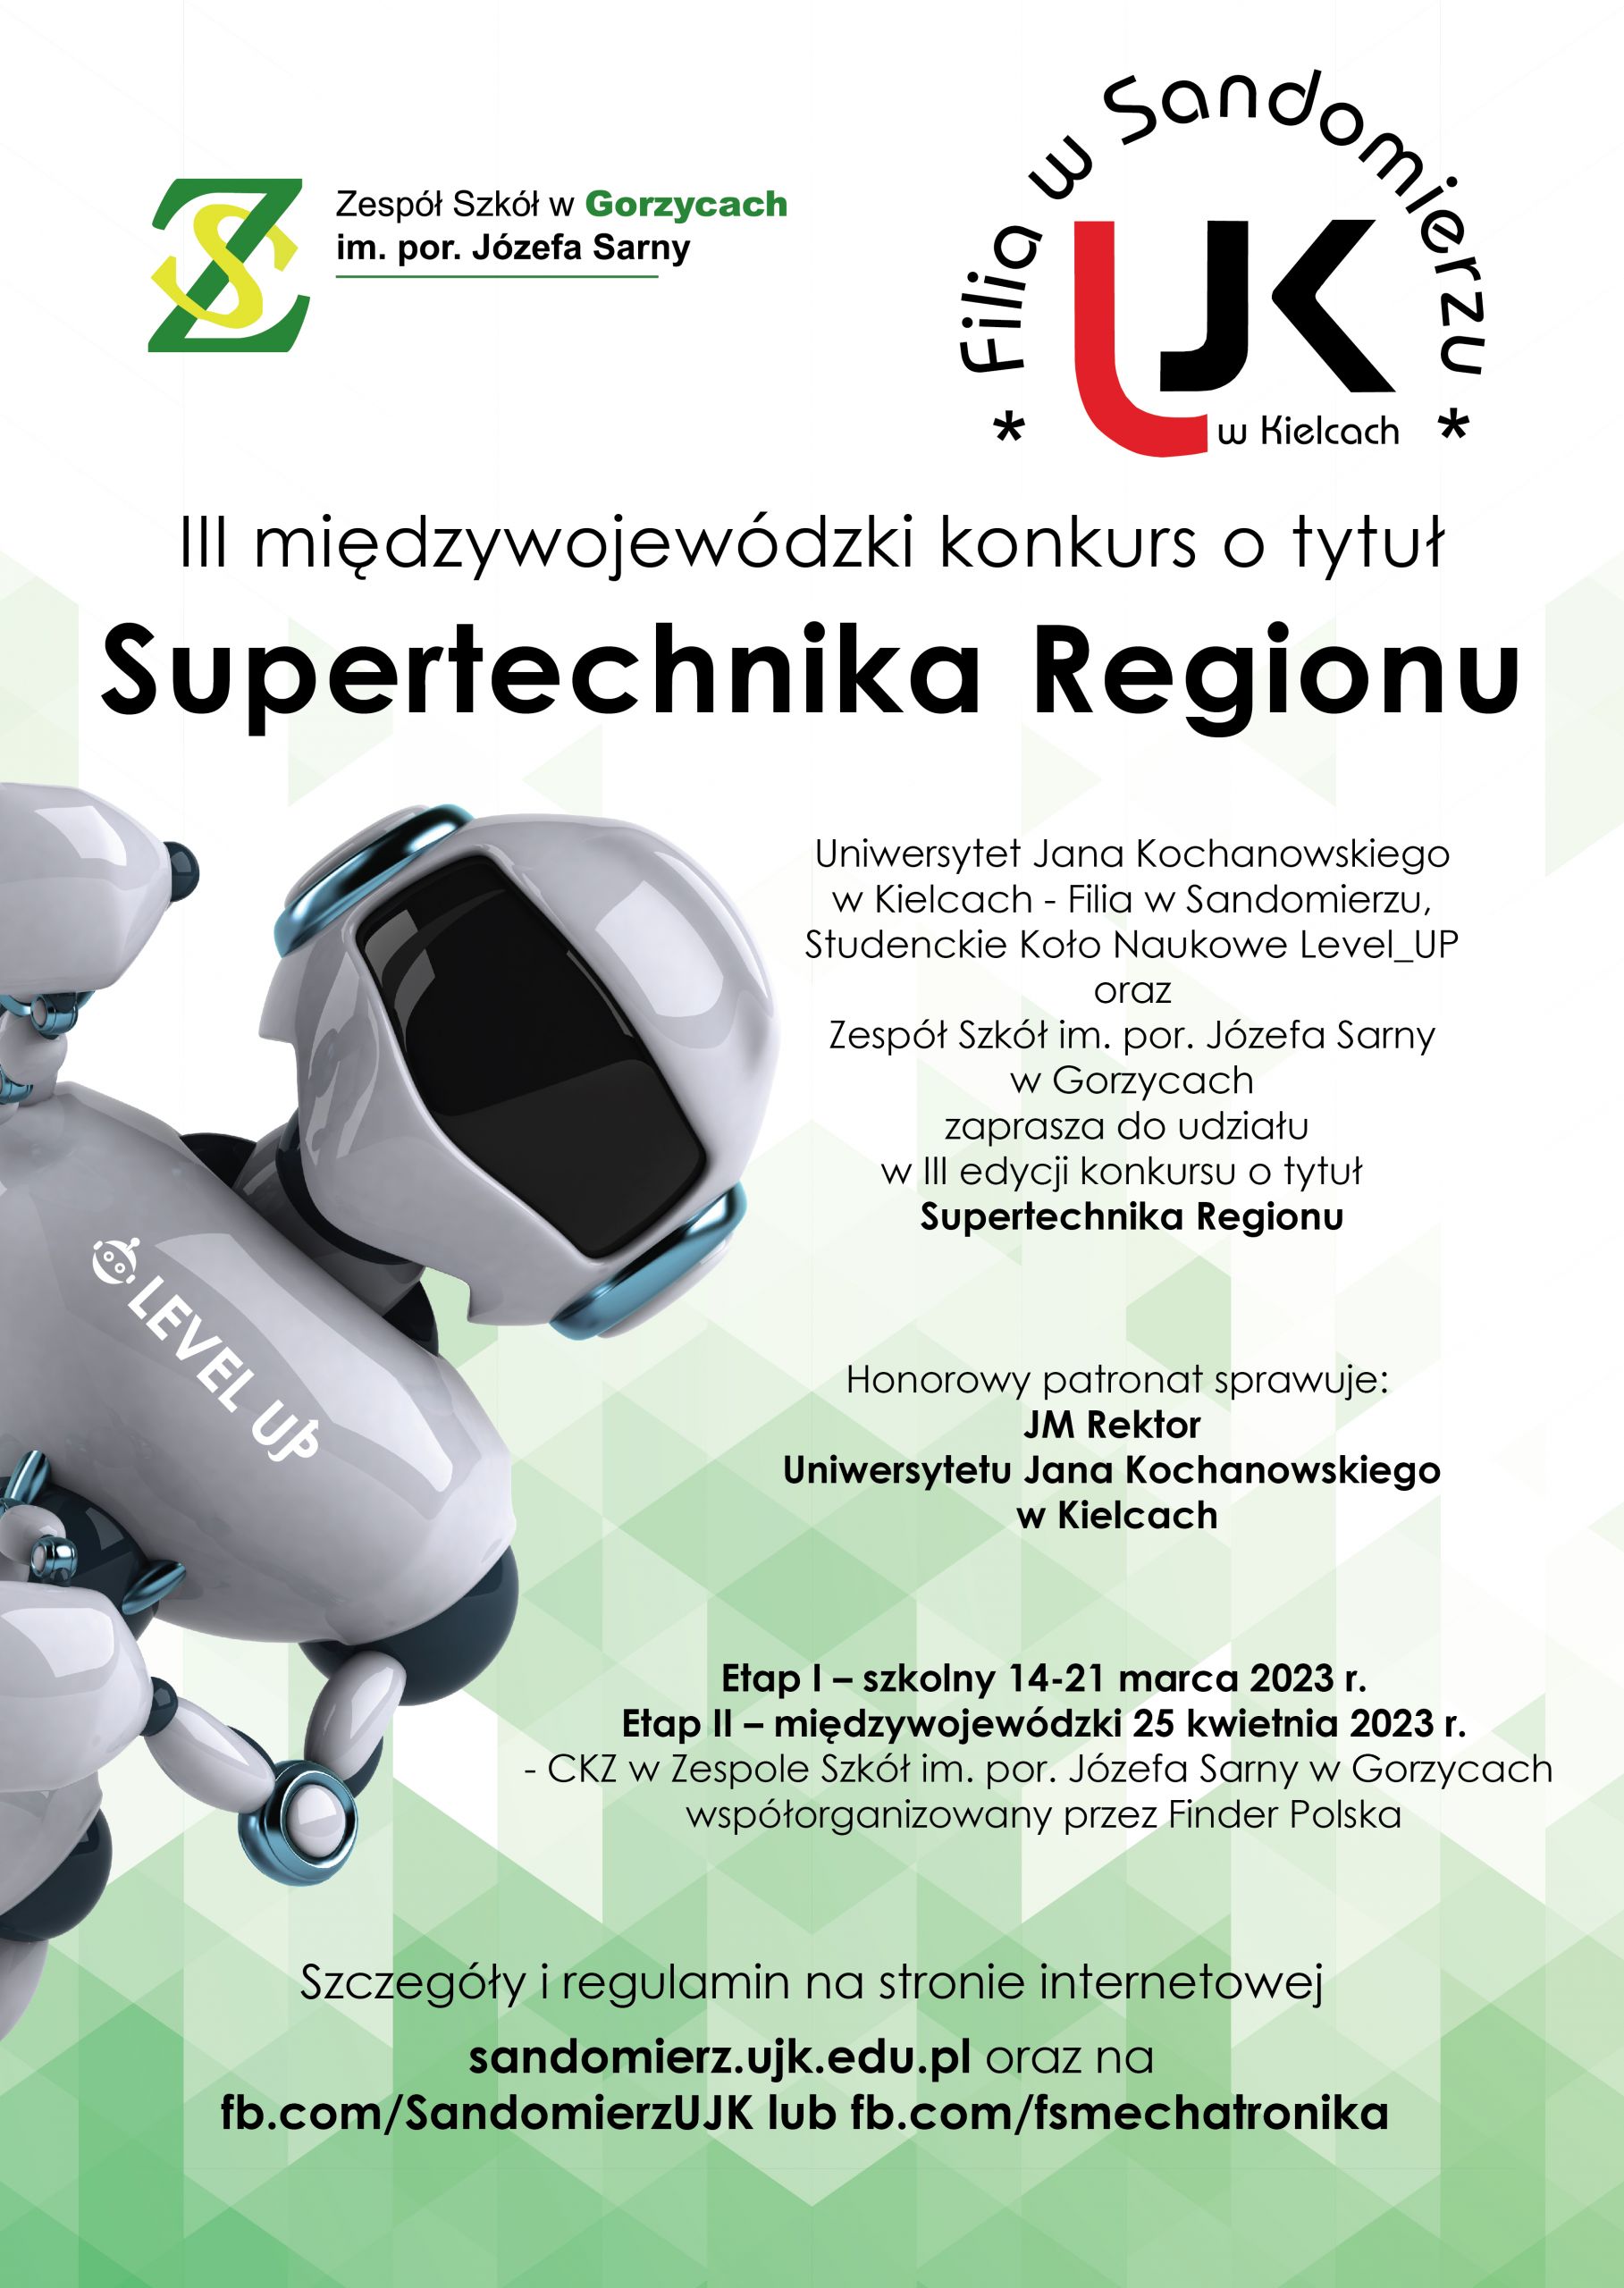 Plakat reklamowy konkursu o tytul supertechnika regionu, robot na zielonym tle